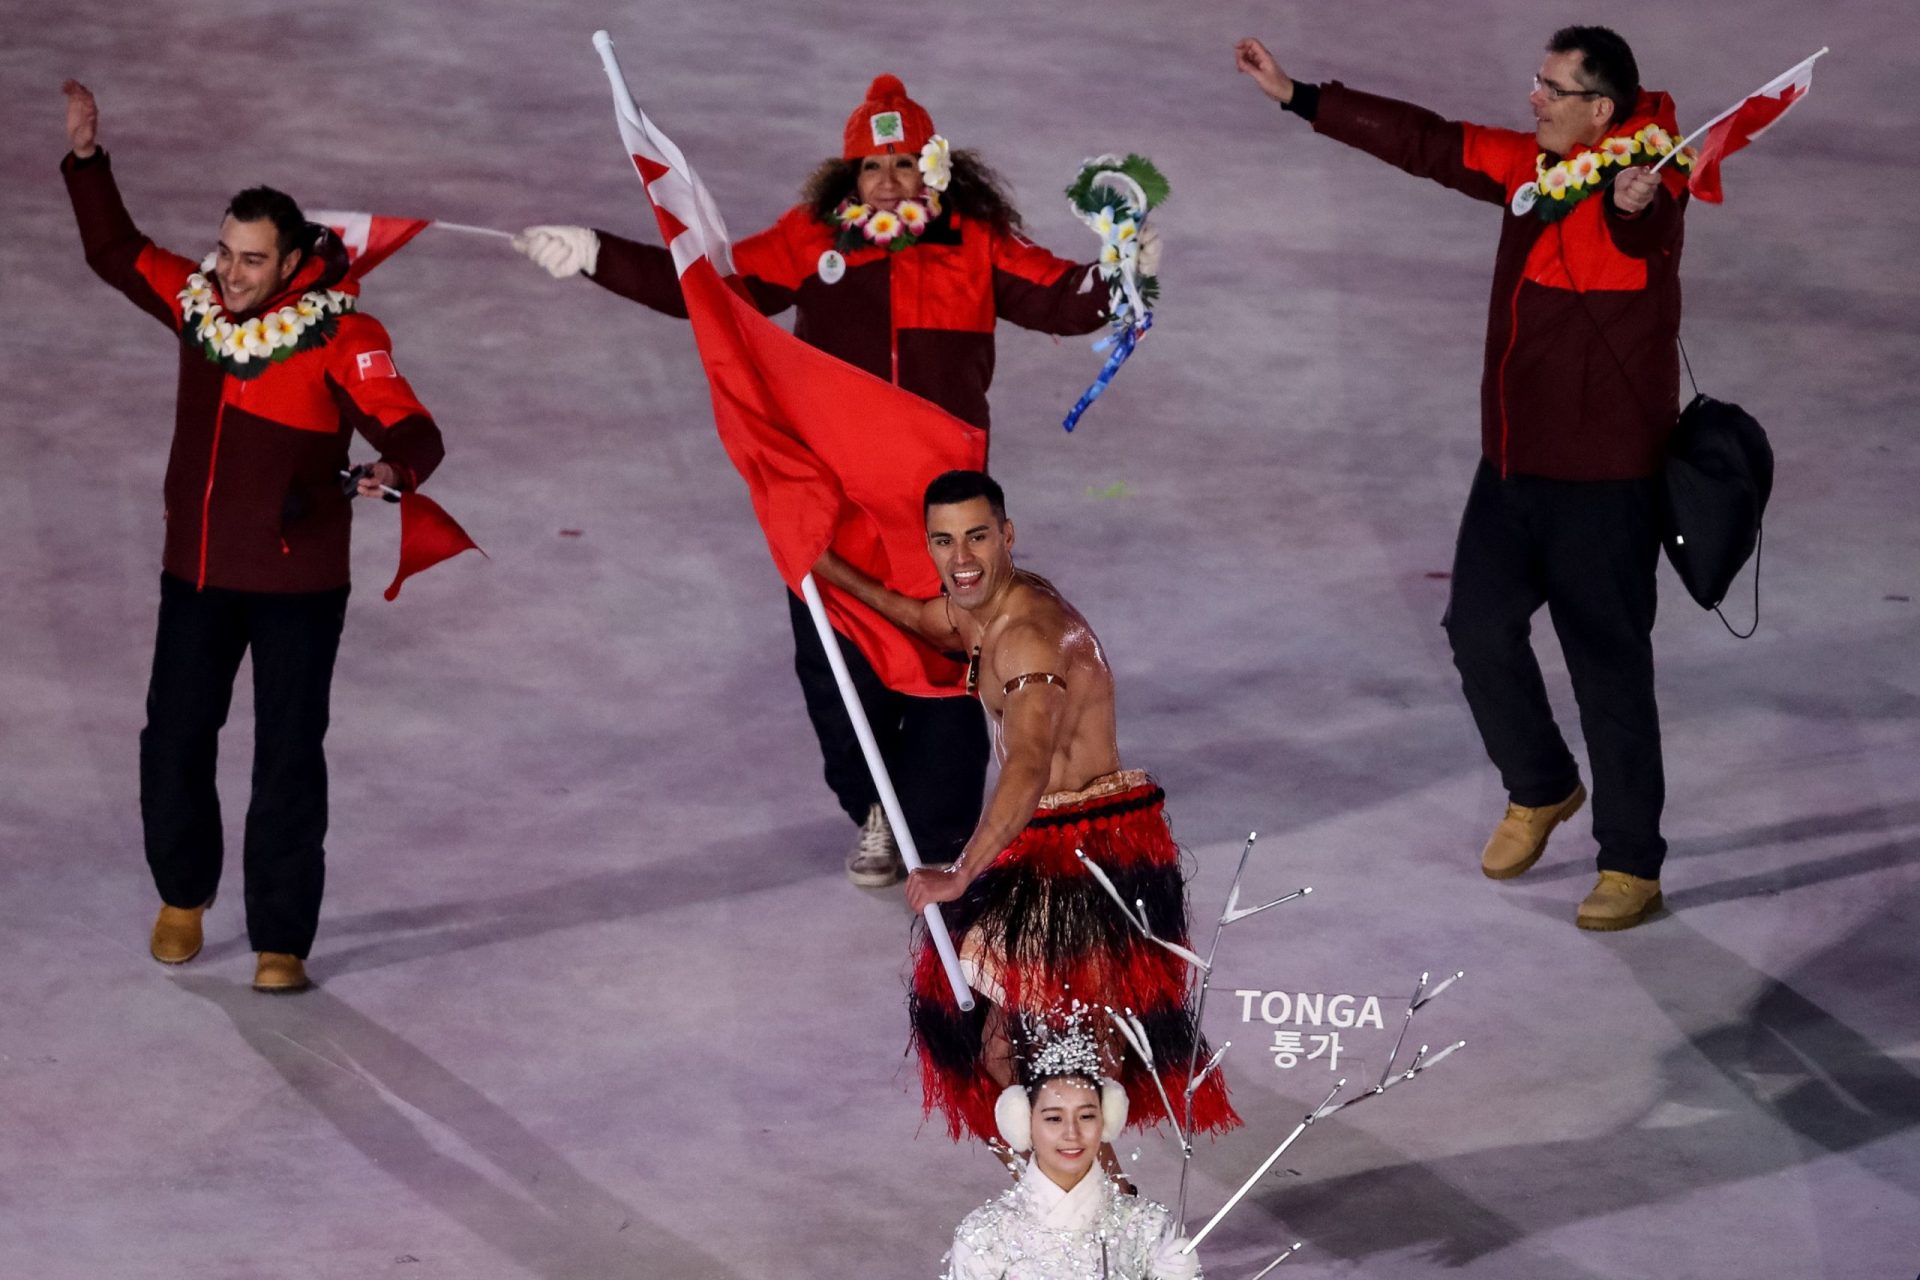 Dos Jogos Olímpicos do Rio ao PyeongChang 2018. Tonga voltou a ficar em tronco nu na abertura de cerimónia